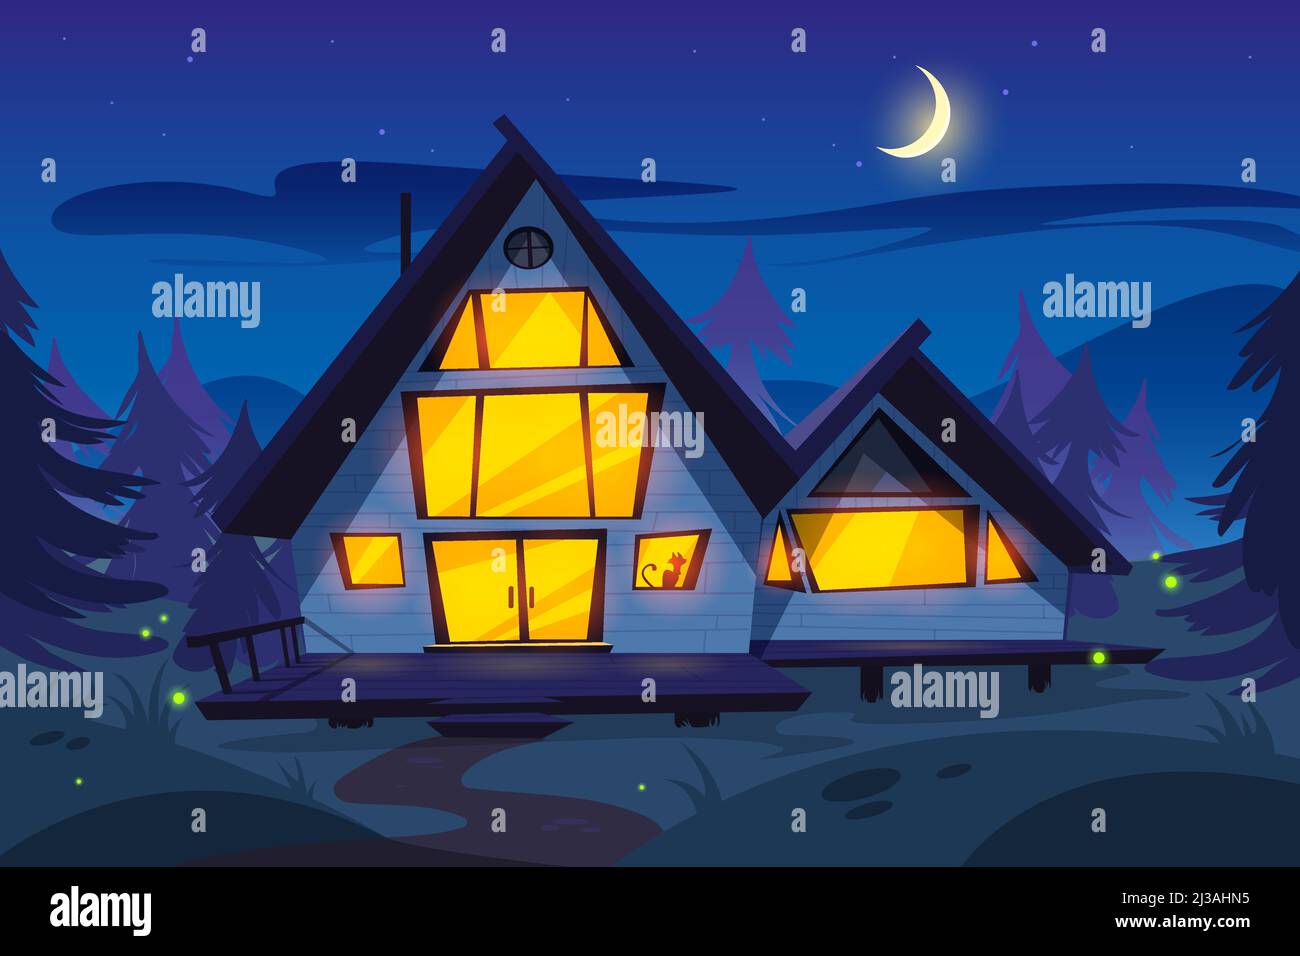 Ilustración de la casa de dibujos animados en la noche